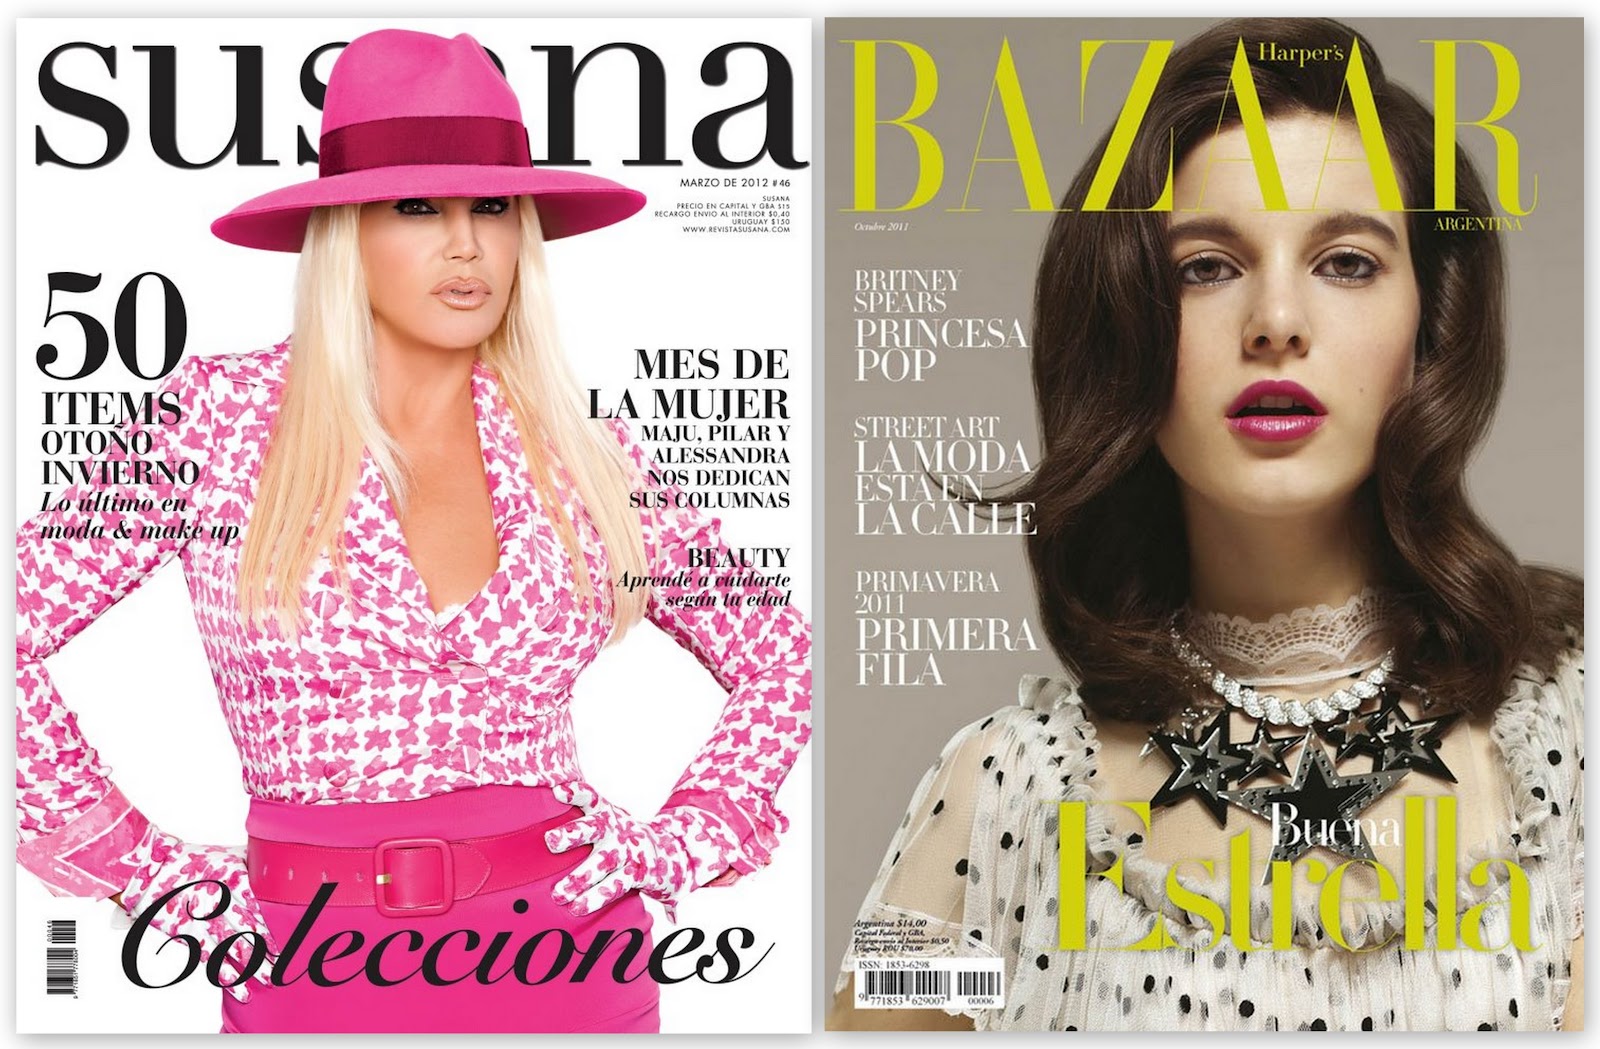 http://3.bp.blogspot.com/-4EW2mfbvMmE/T_oGvV-afMI/AAAAAAAACfs/WunfkhC_mak/s1600/Susana-Revista-Harpers-Bazaar-Argentina-Estrellas.jpg